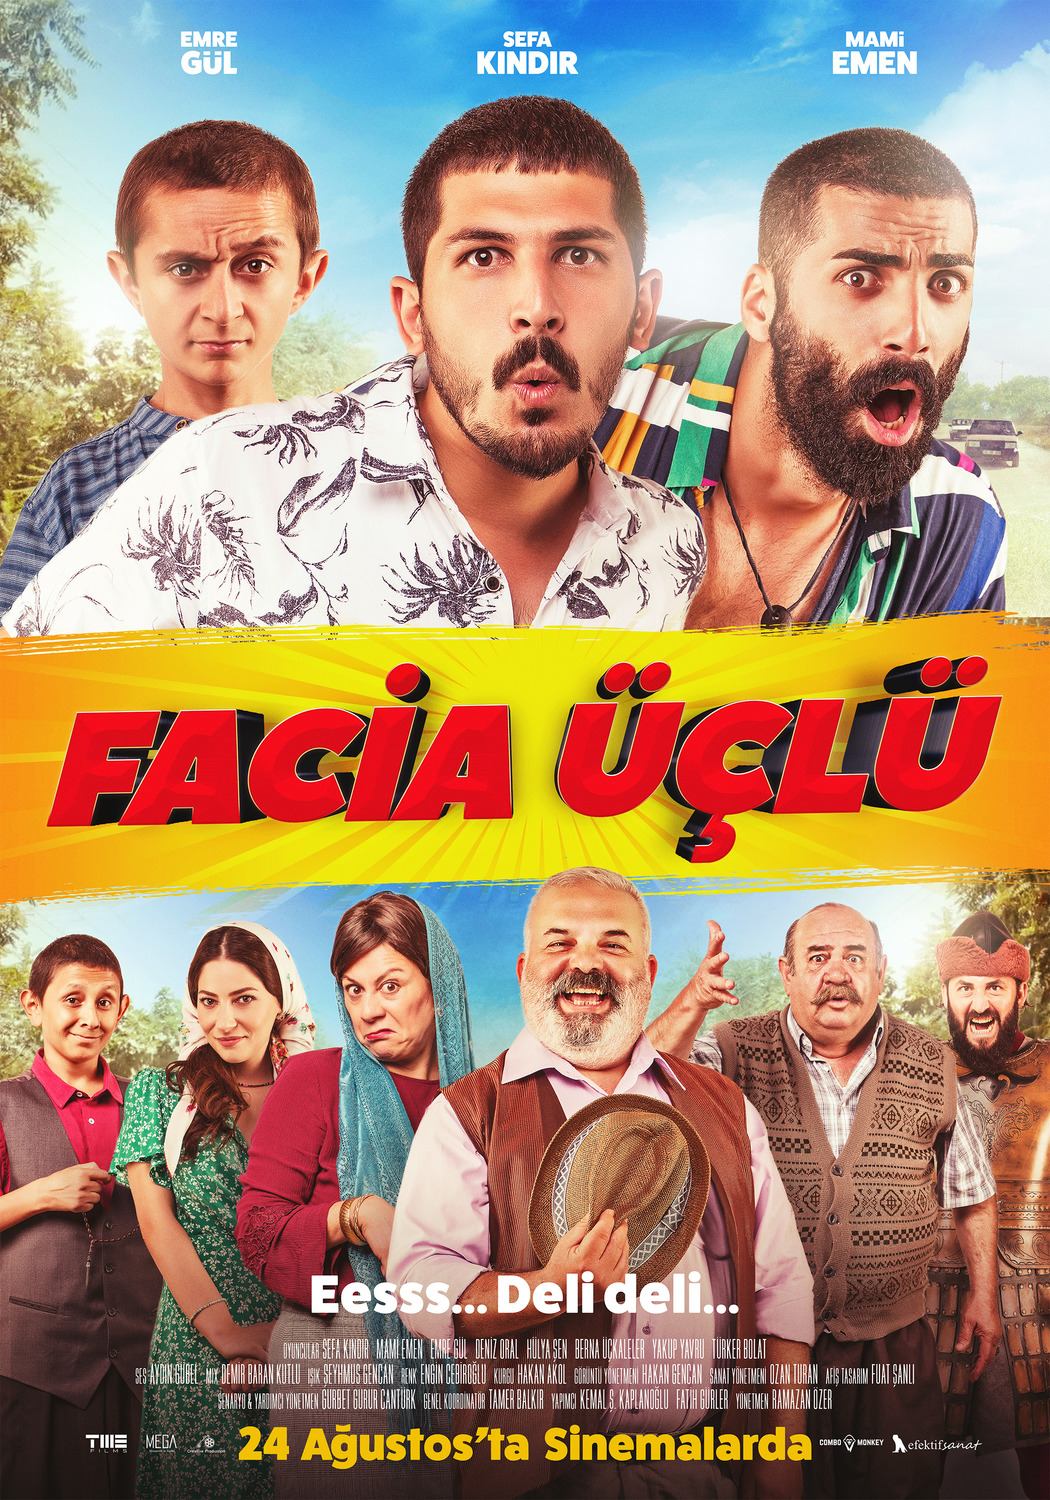 Extra Large Movie Poster Image for Facia Üçlü (#7 of 7)